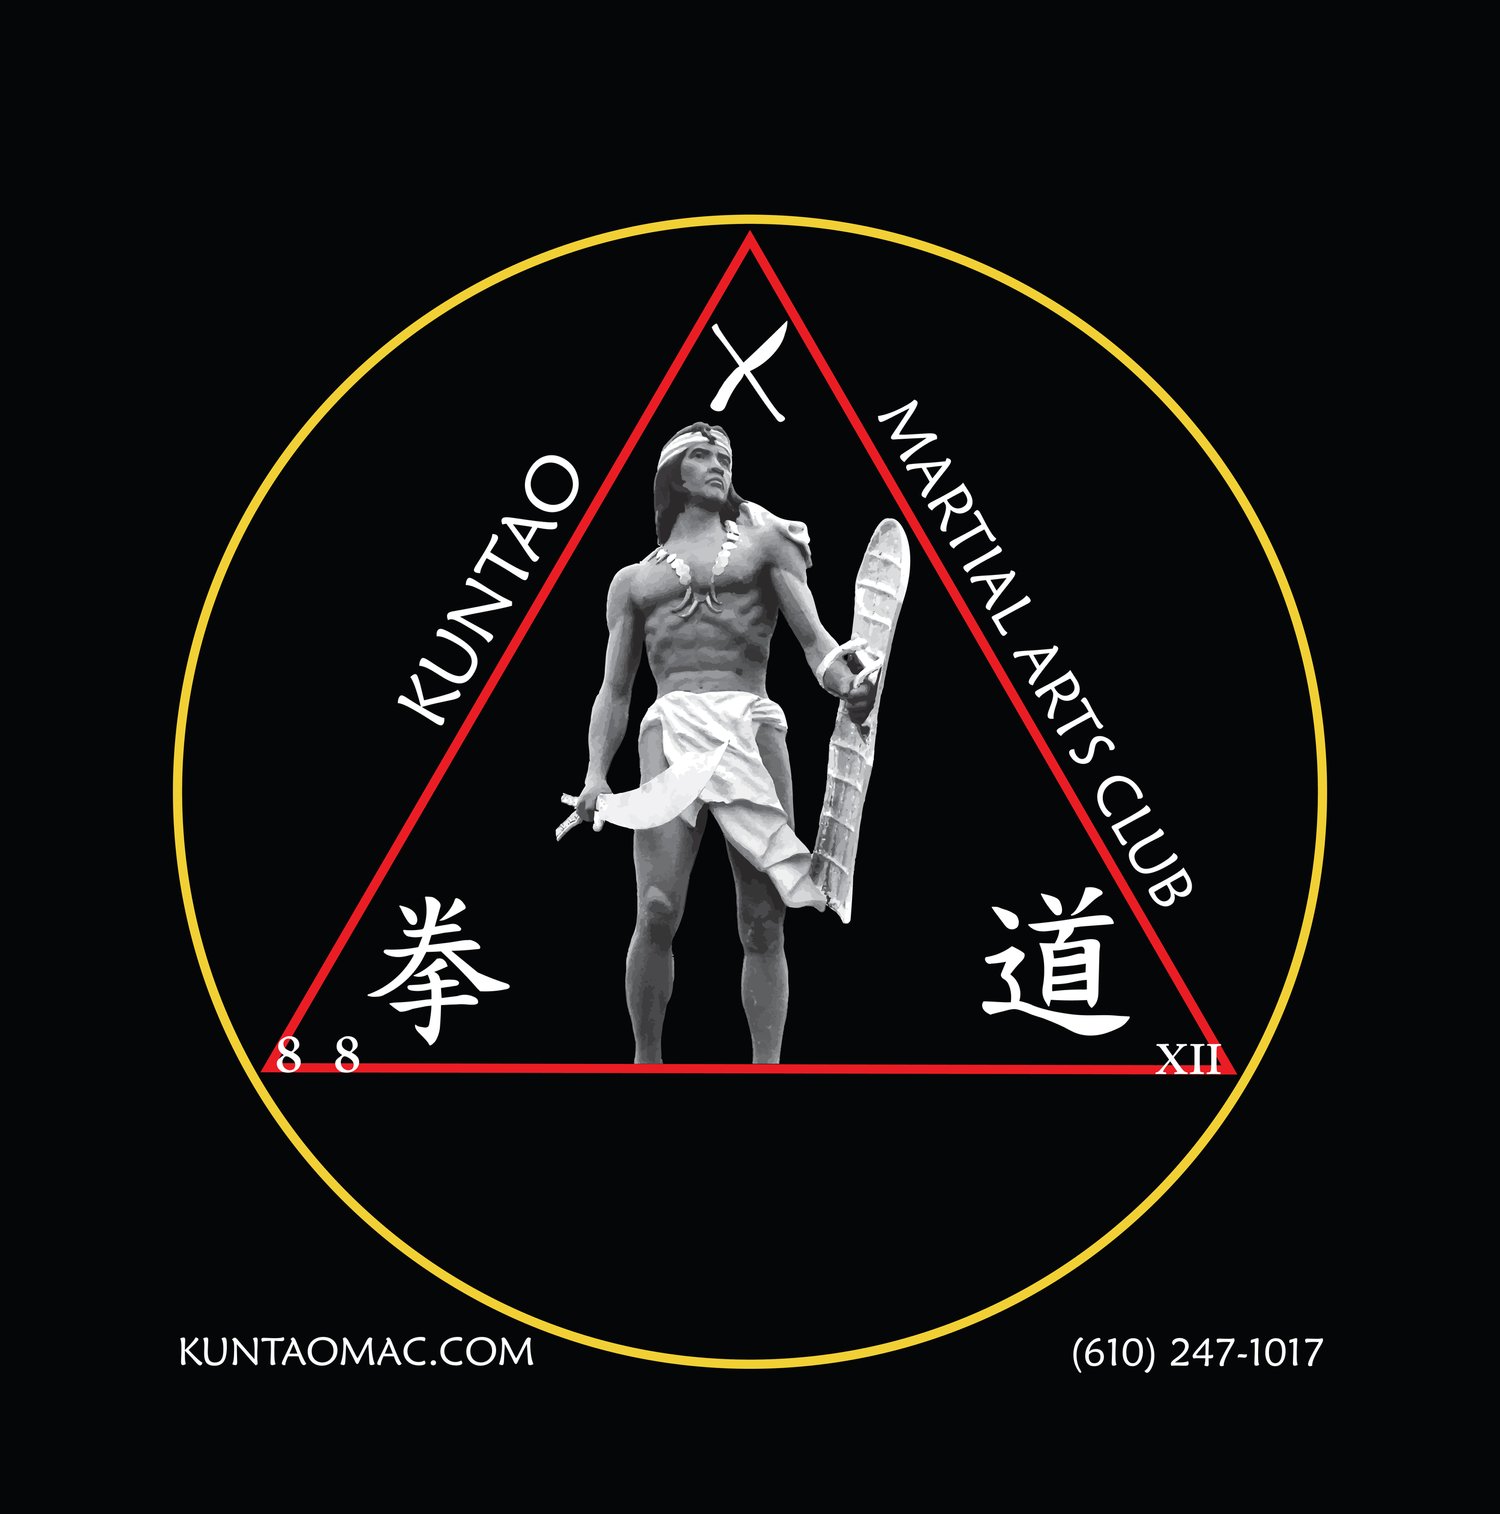 Kuntao Martial Arts Club